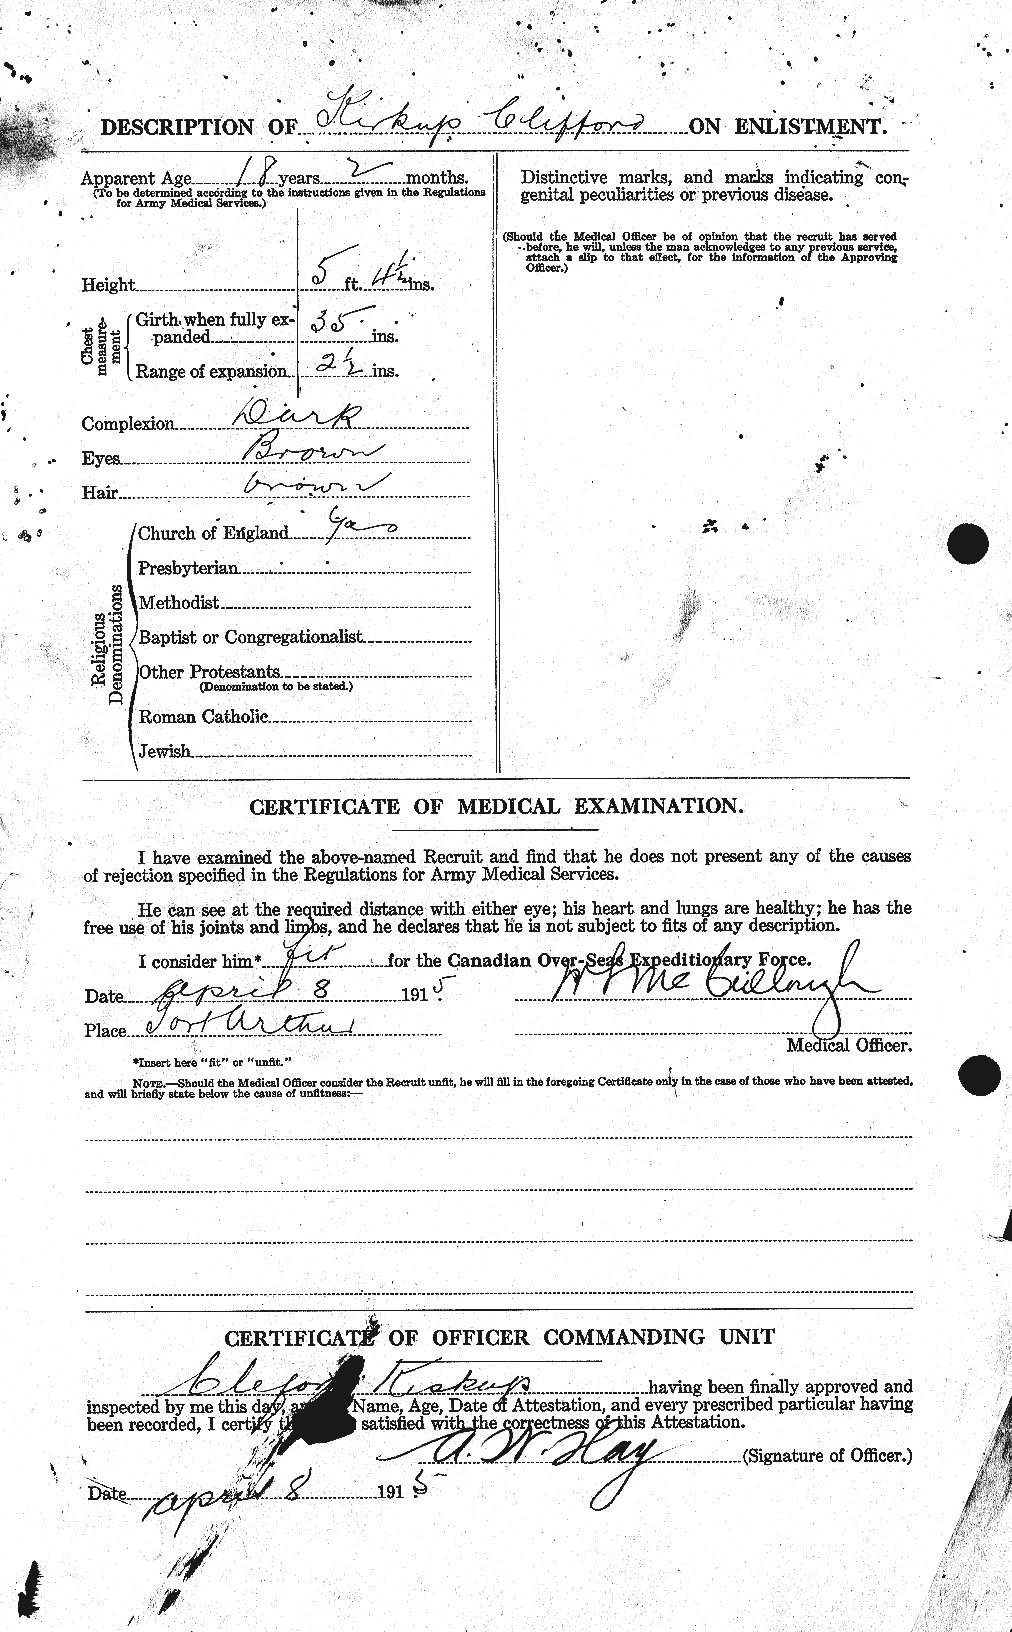 Dossiers du Personnel de la Première Guerre mondiale - CEC 436156b